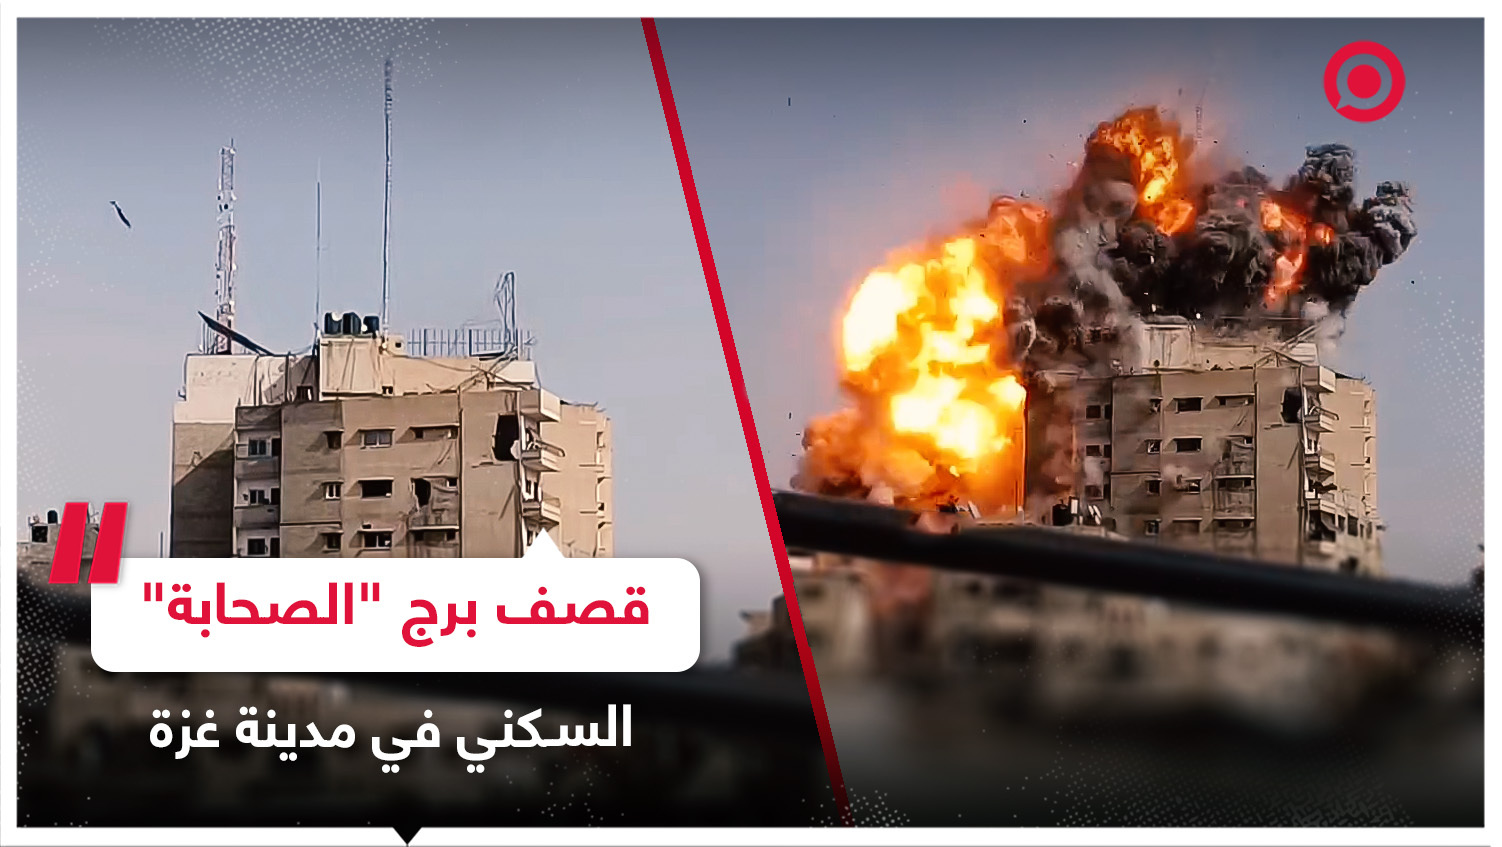 لحظة استهداف الجيش الإسرائيلي لبرج "الصحابة" السكني في مدينة غزة بصاروخ مباشر